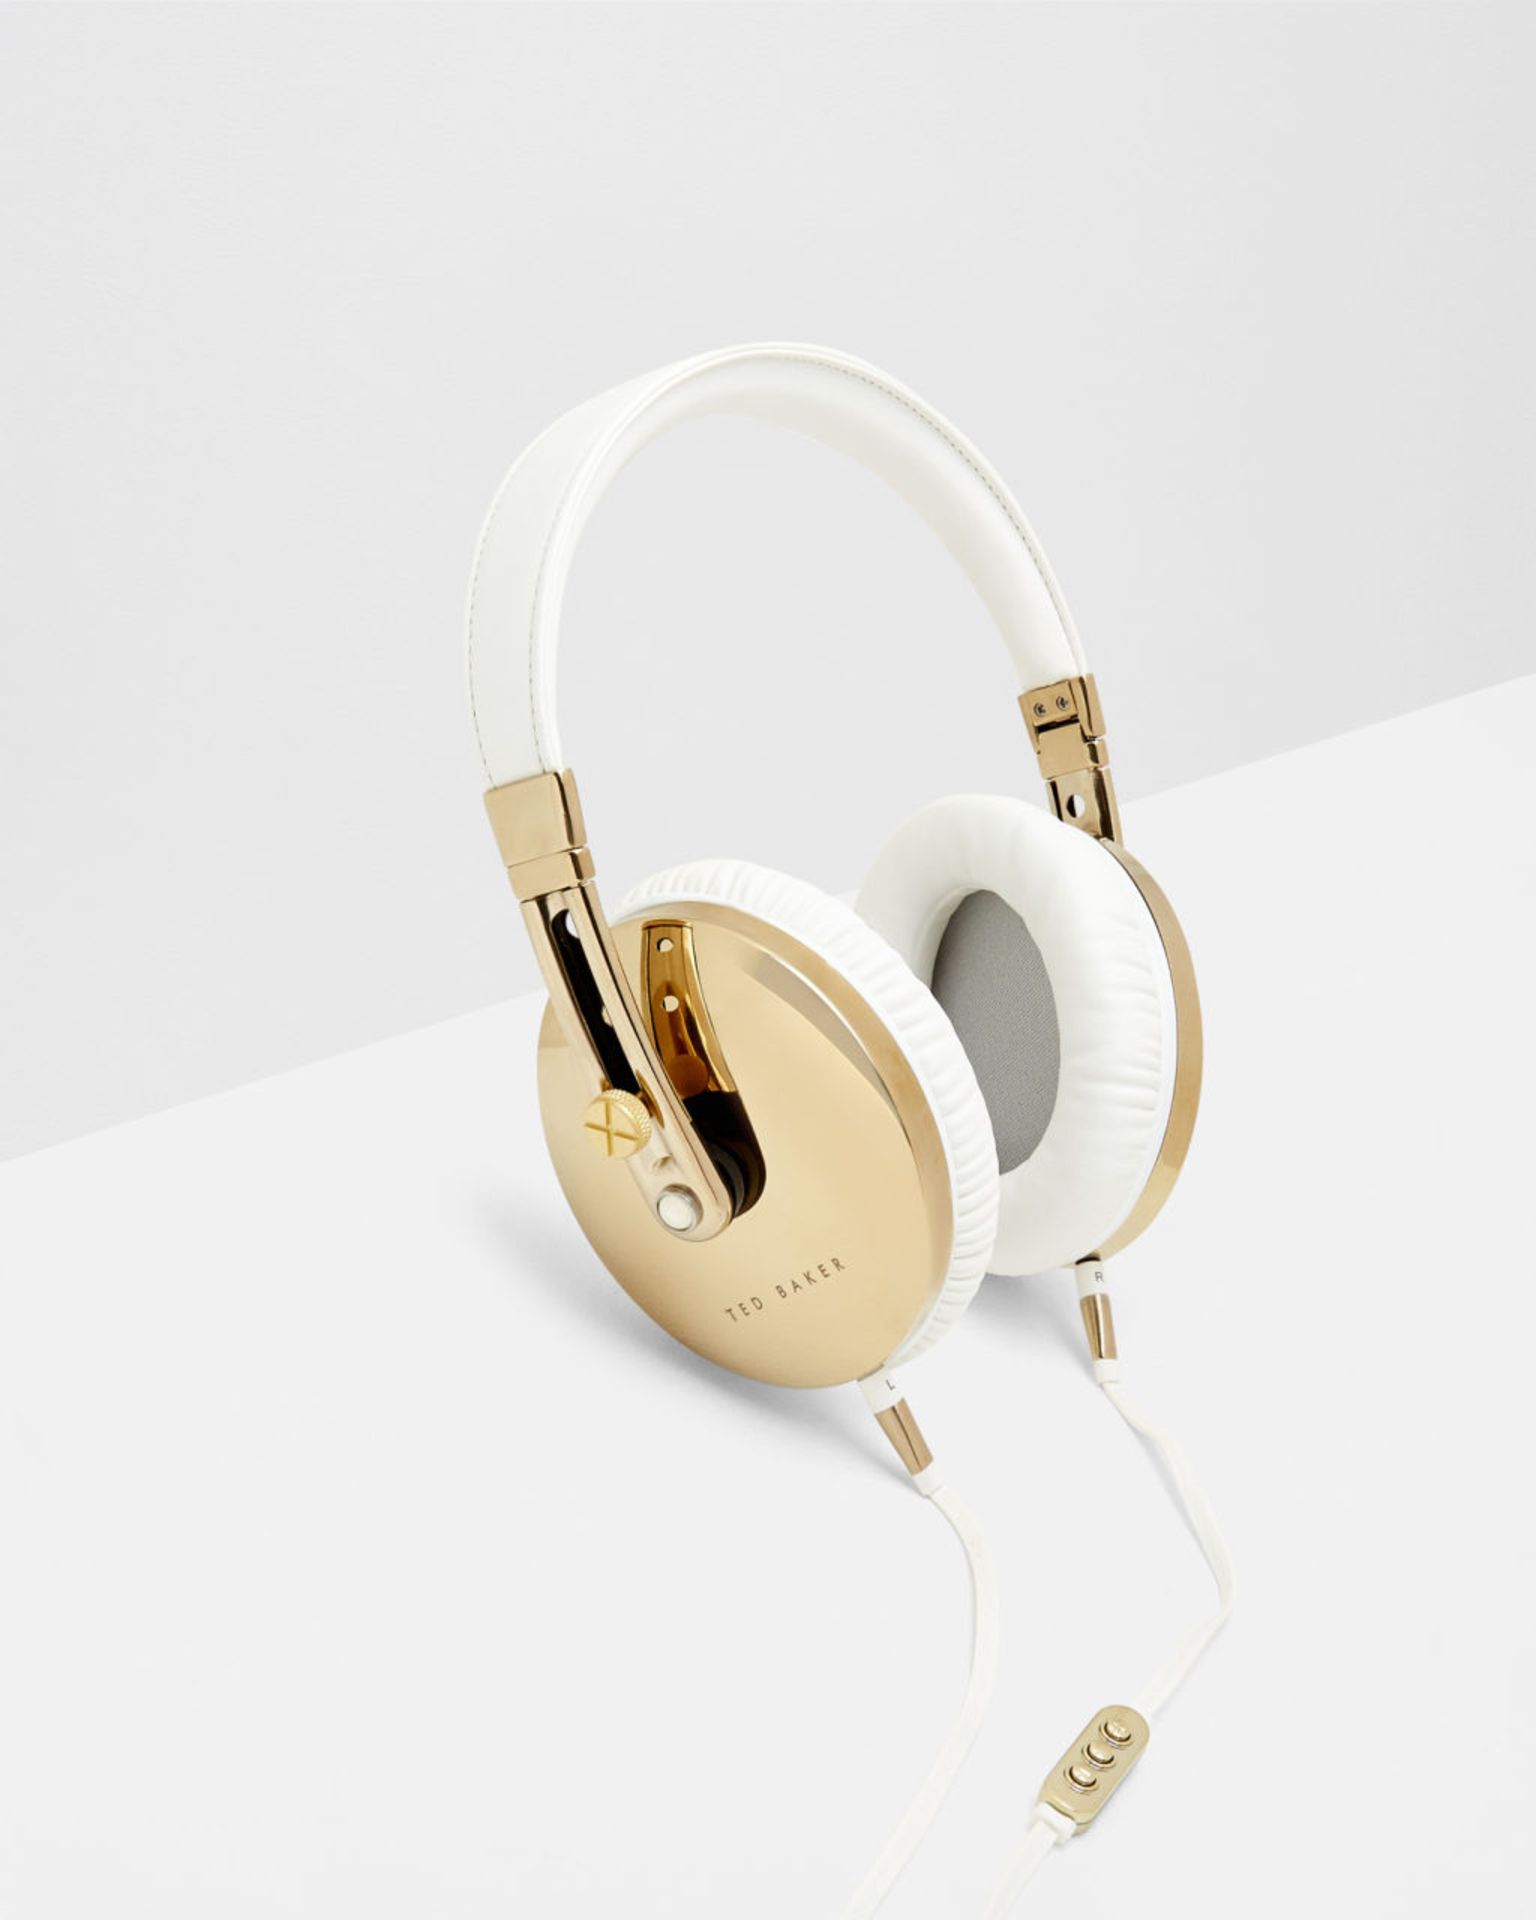 V *TRADE QTY* Brand New Ted Baker Rockall High Performance Folding Over Ear Headphones White/Gold